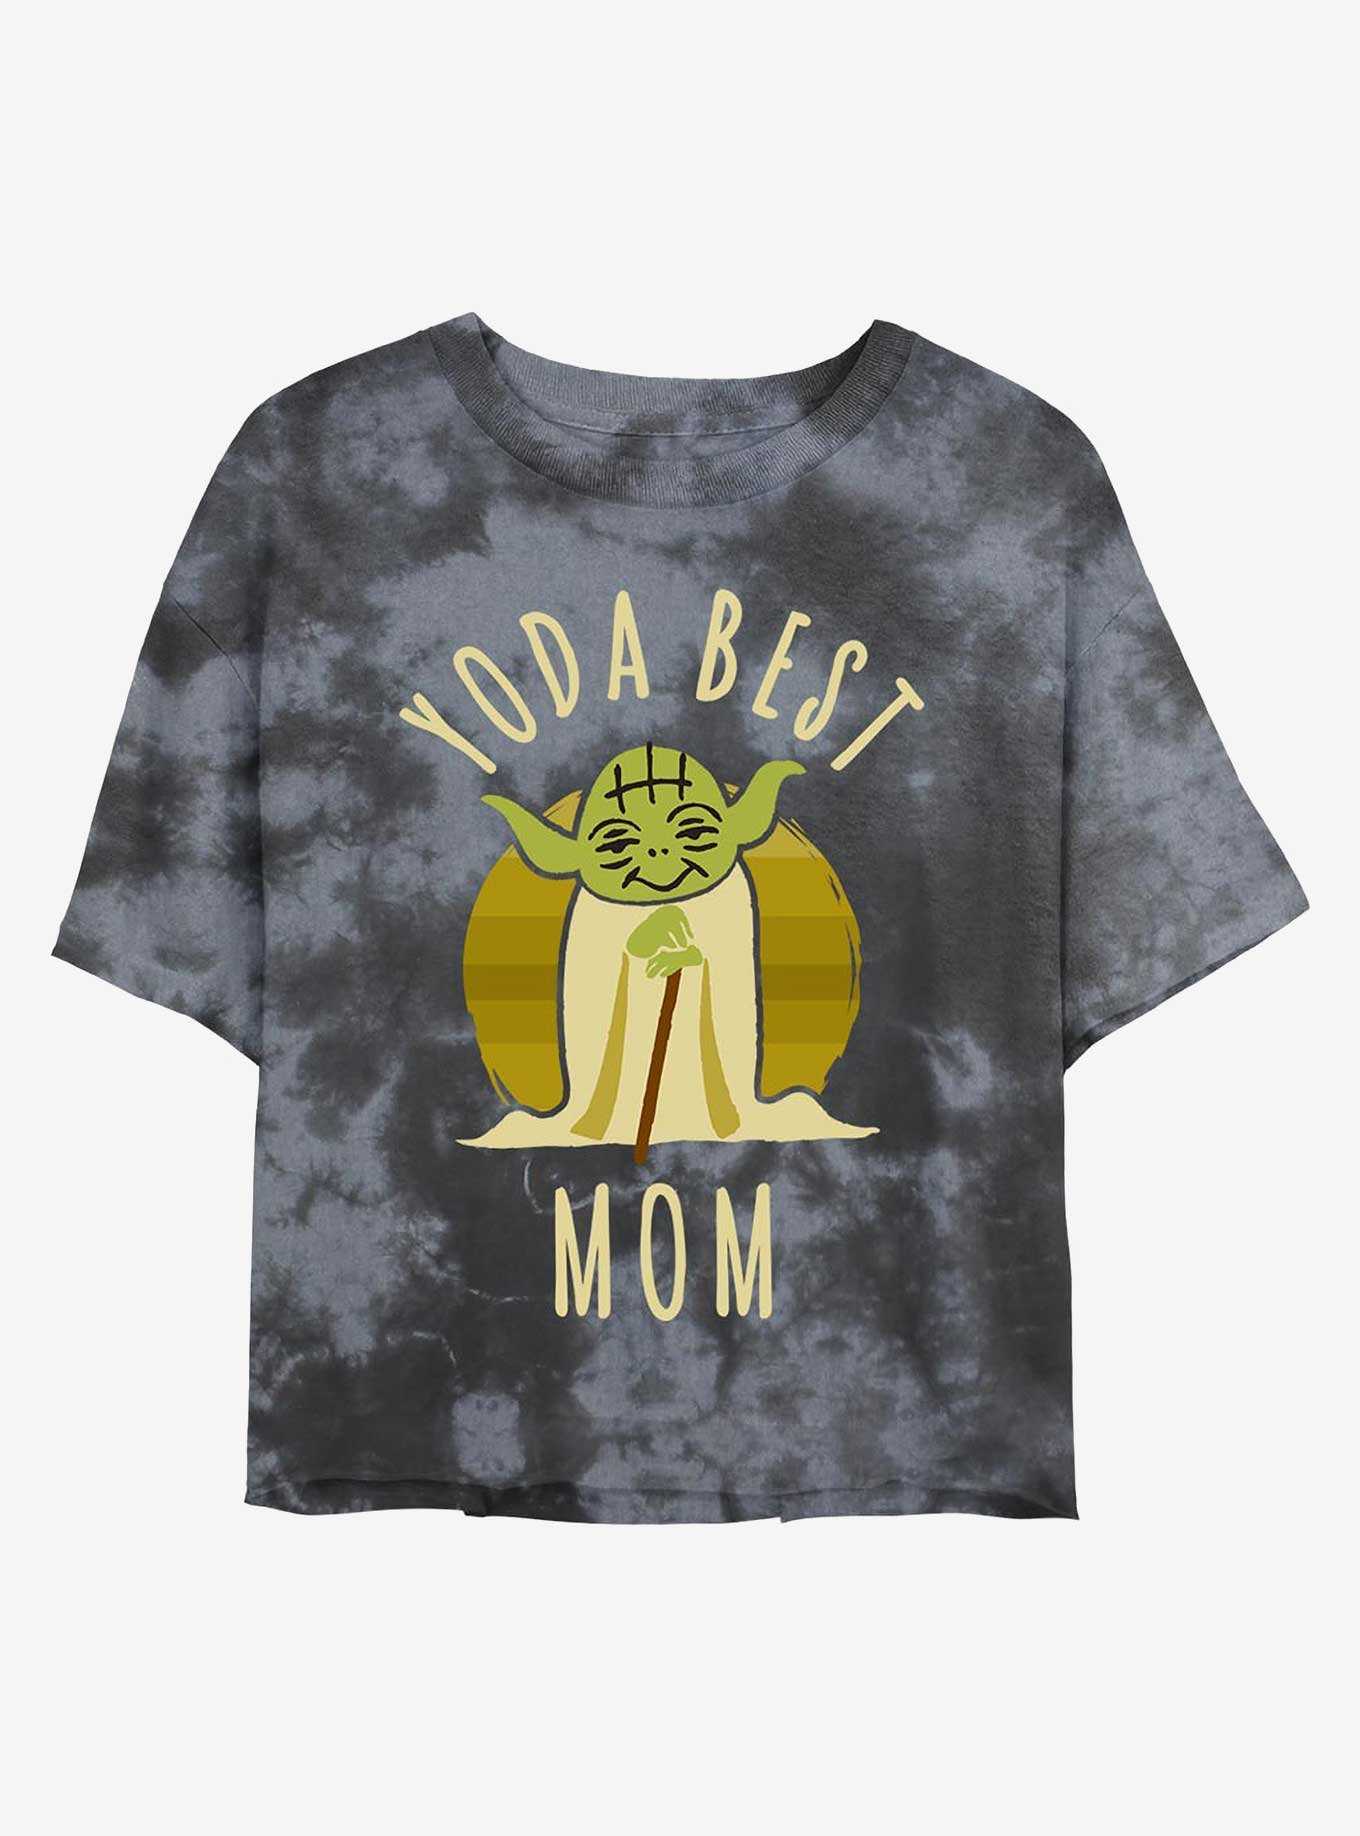 Star Wars Yoda Best Mom Tie-Dye Girls Crop T-Shirt, , hi-res